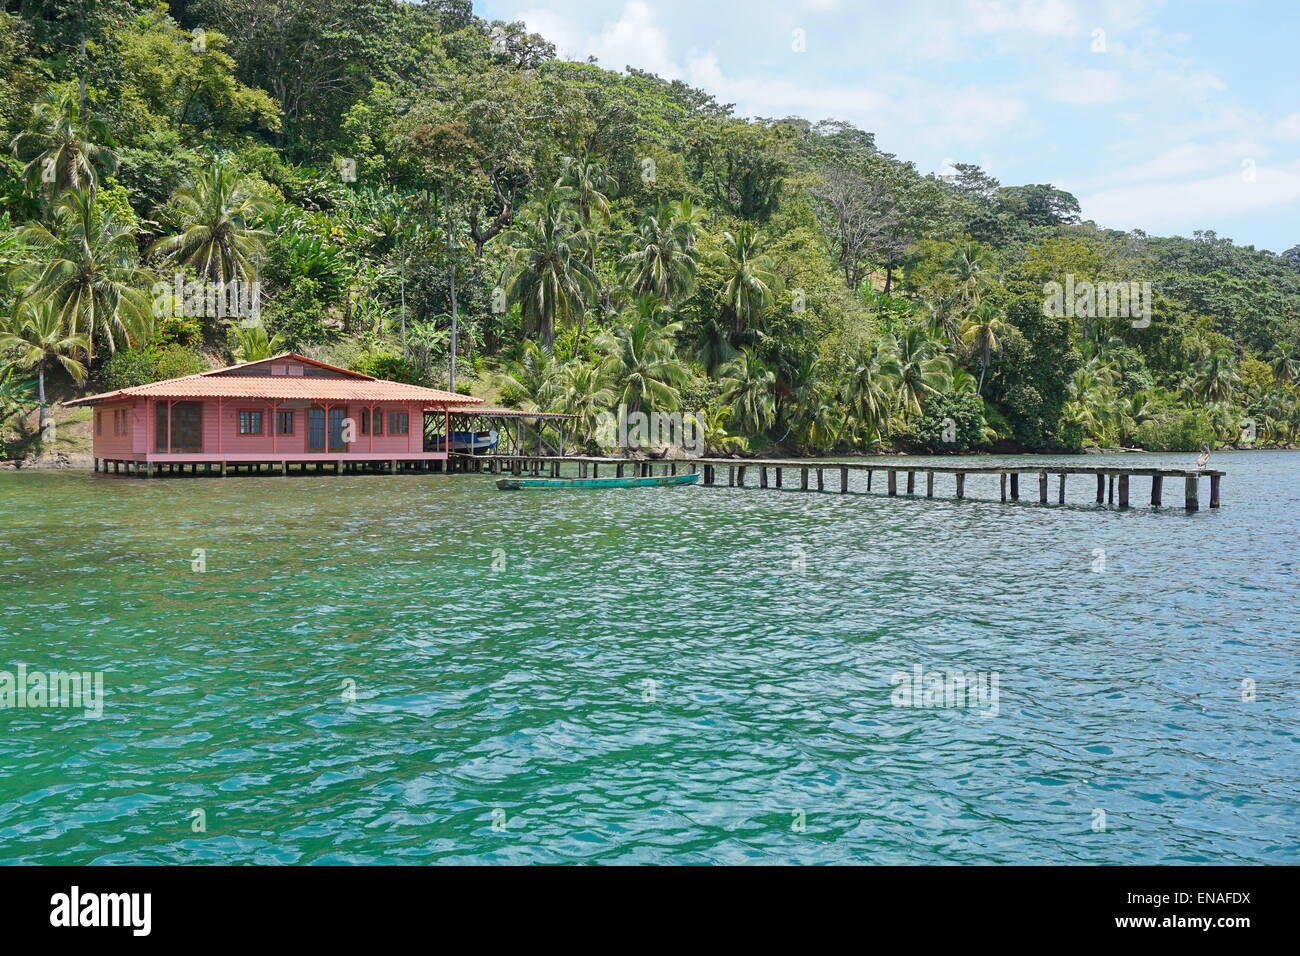 Tropenhaus mit dock über das Meer und einer üppigen tropischen Vegetation auf dem Lande, Karibik Küste von Panama, Bocas del Toro Stockfoto